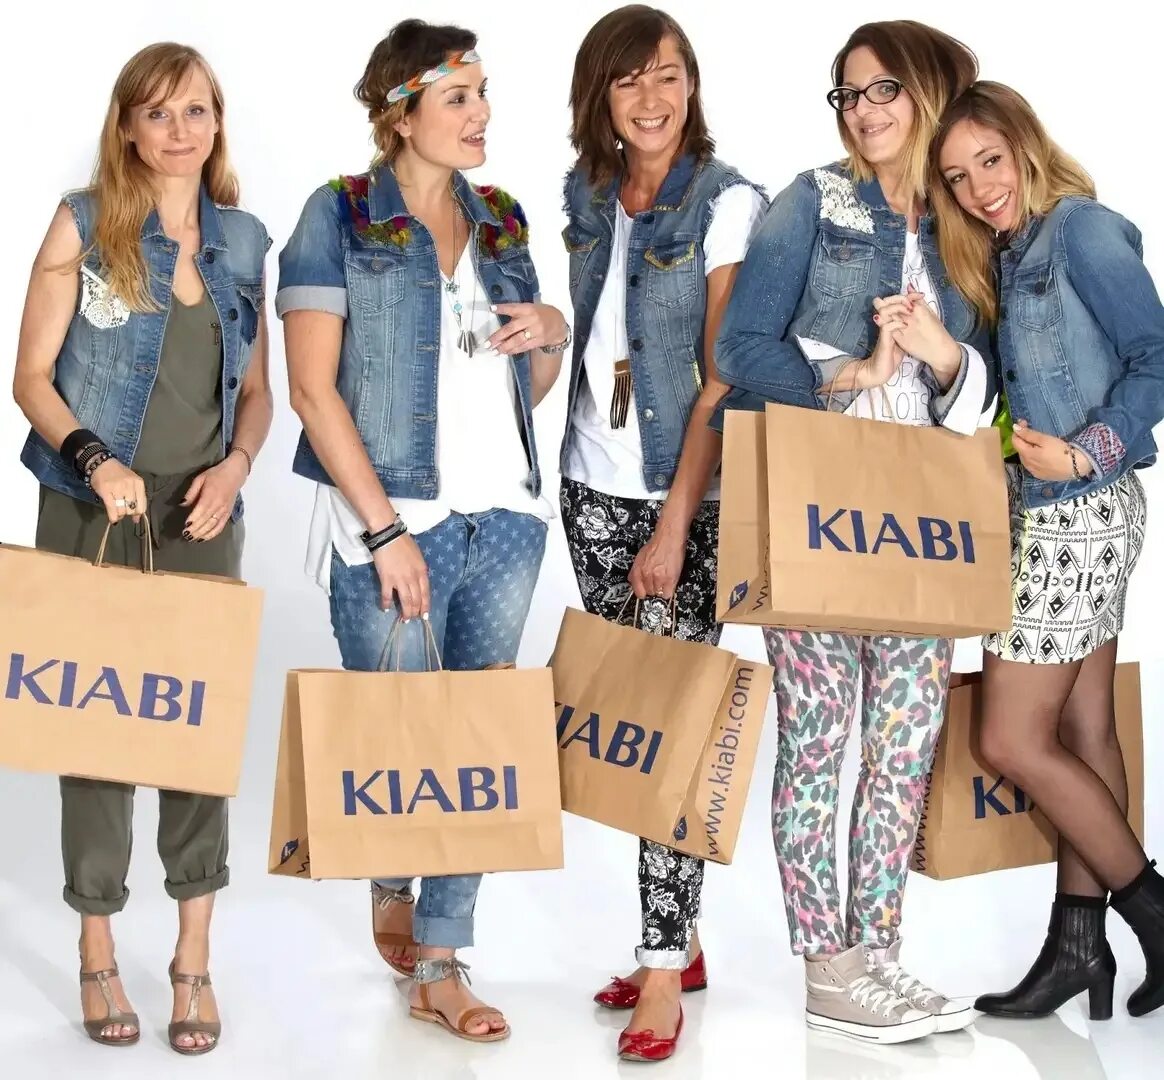 Х сток. Kiabi. Одежда и обувь. Бренд одежды Kiabi. Киаби реклама.